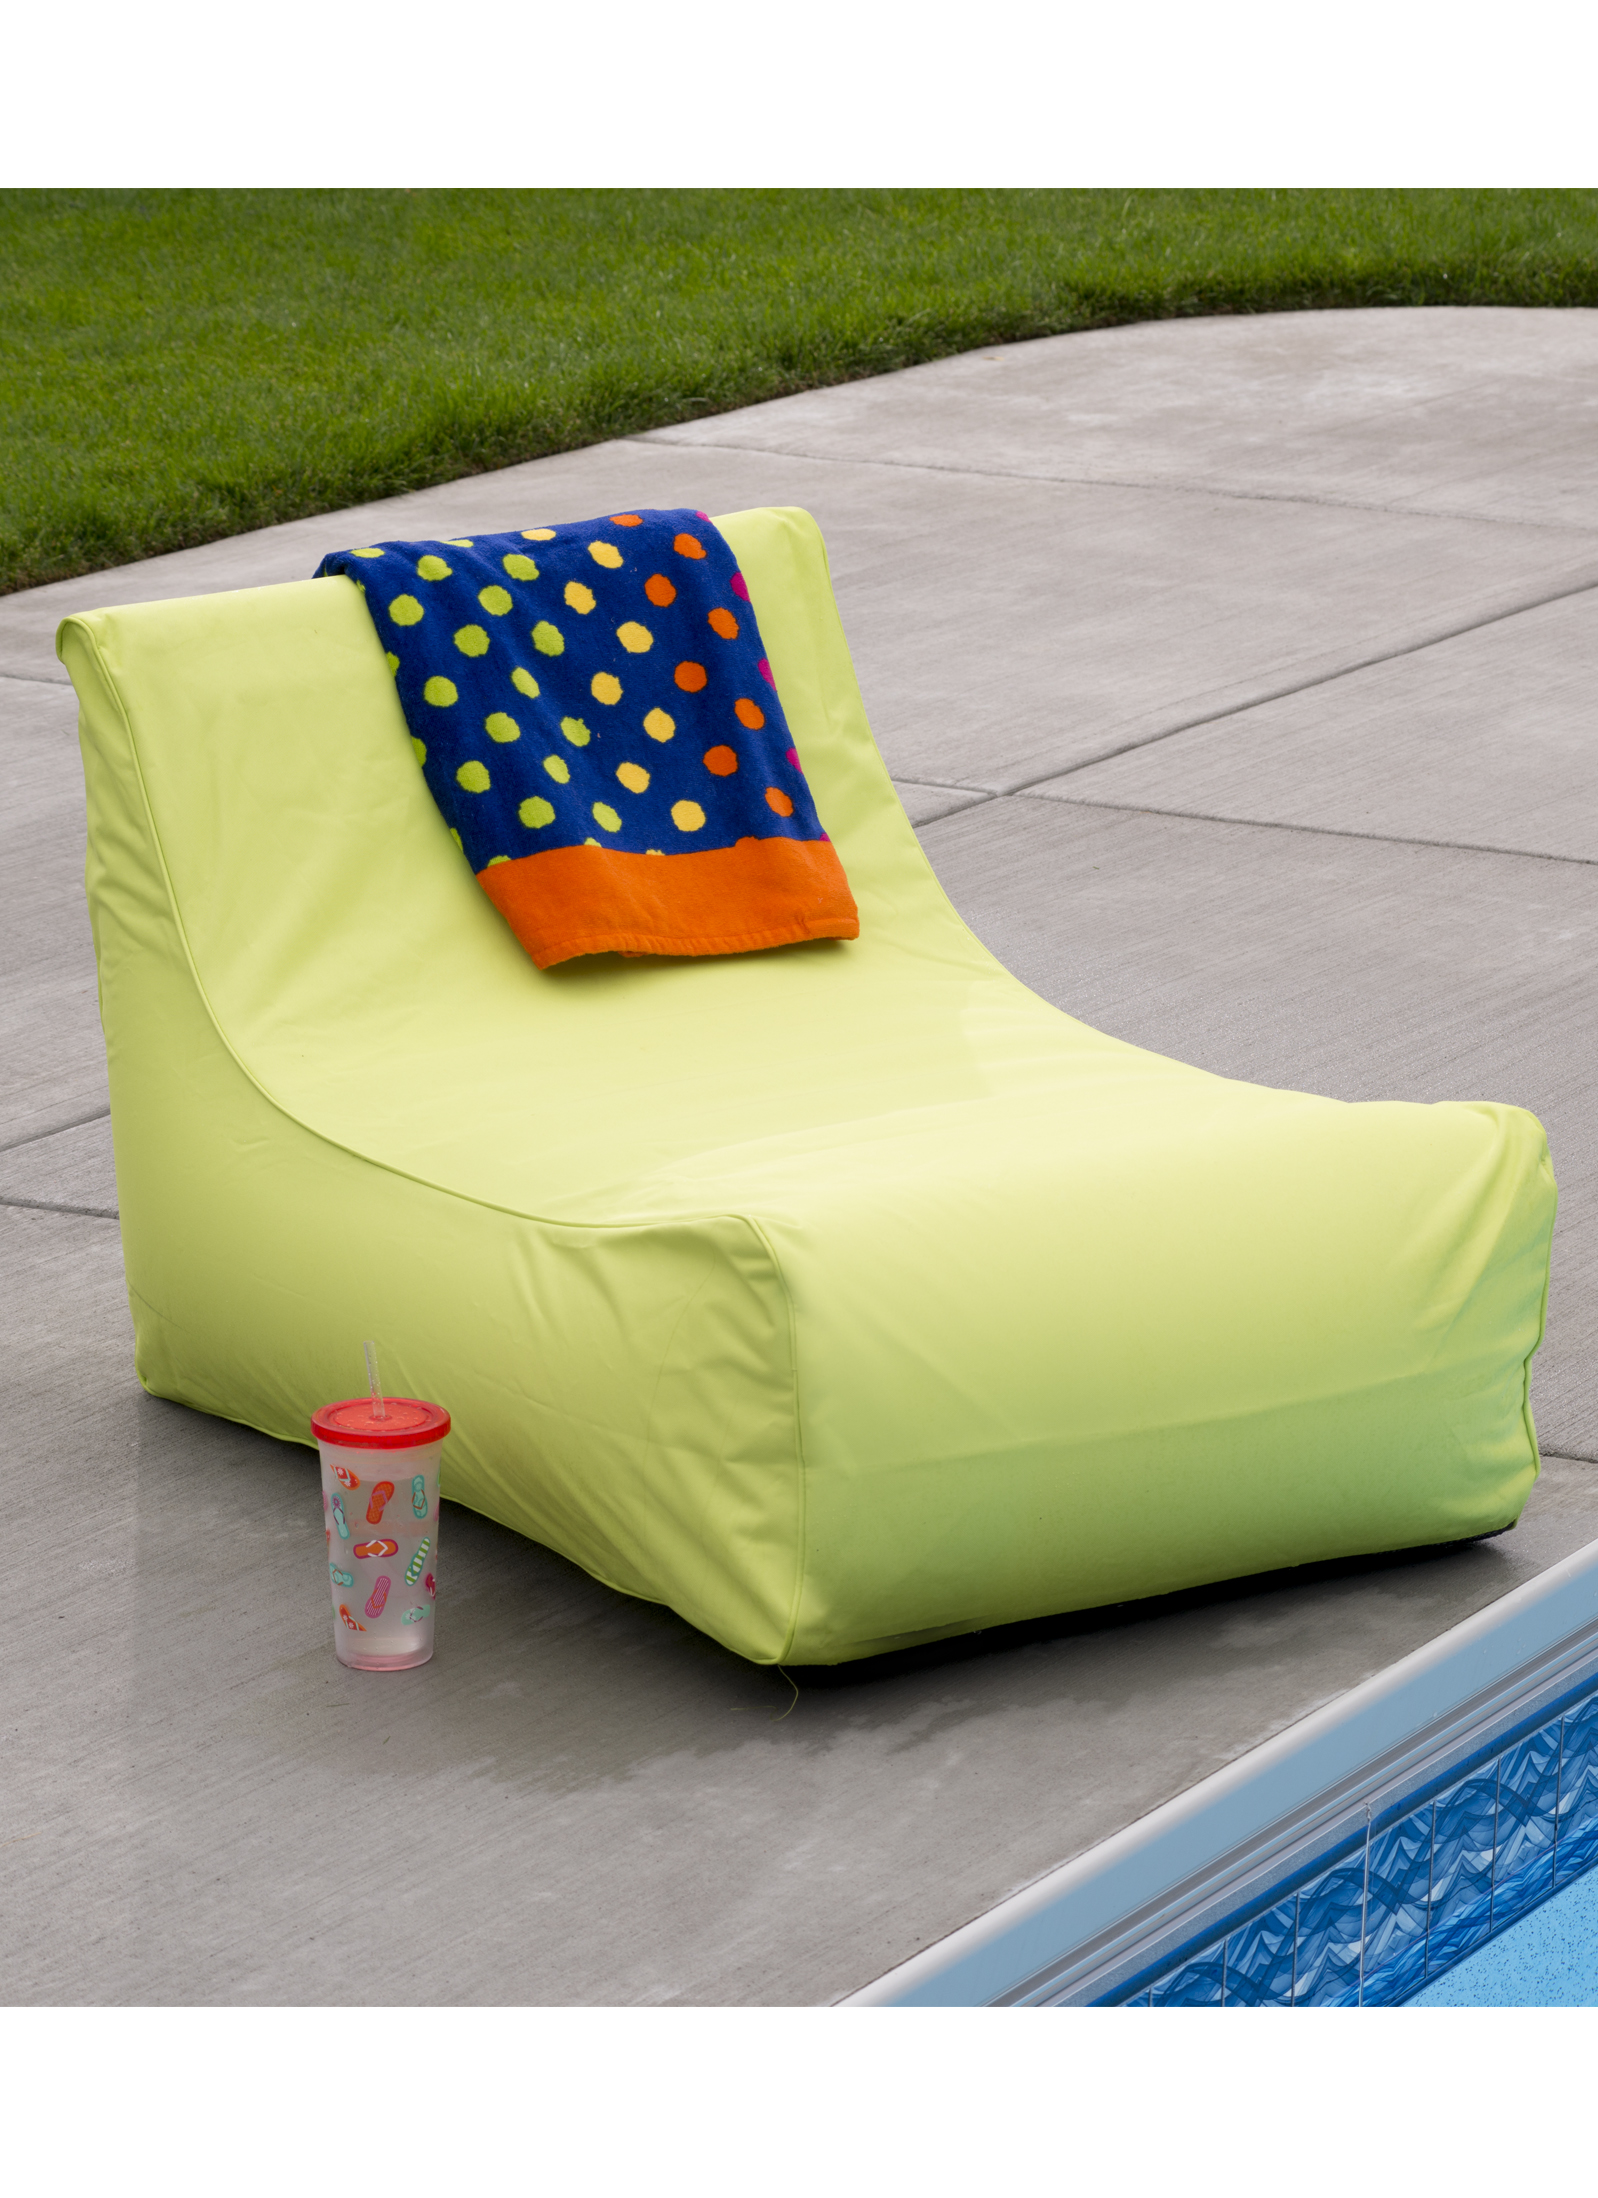 Aruba Inflatable Lounge Chair Lime